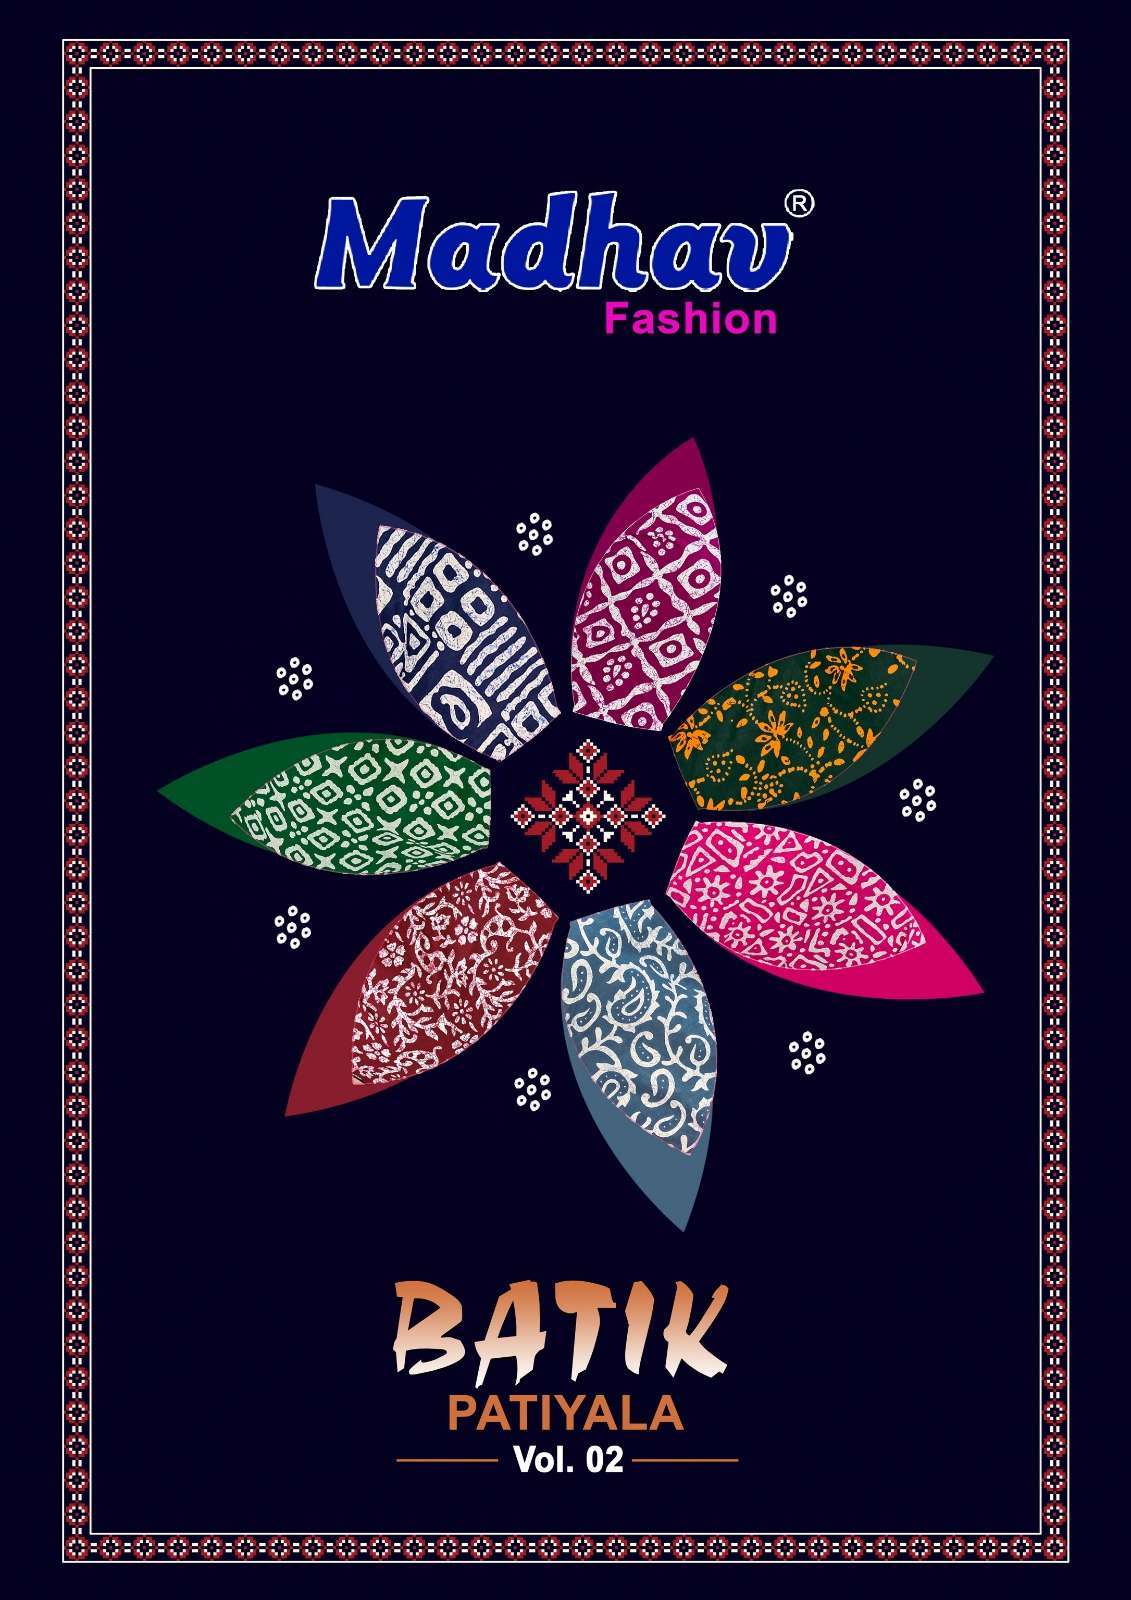 madhav batik patiyala vol 2 series 2001-2010 cotton suit 